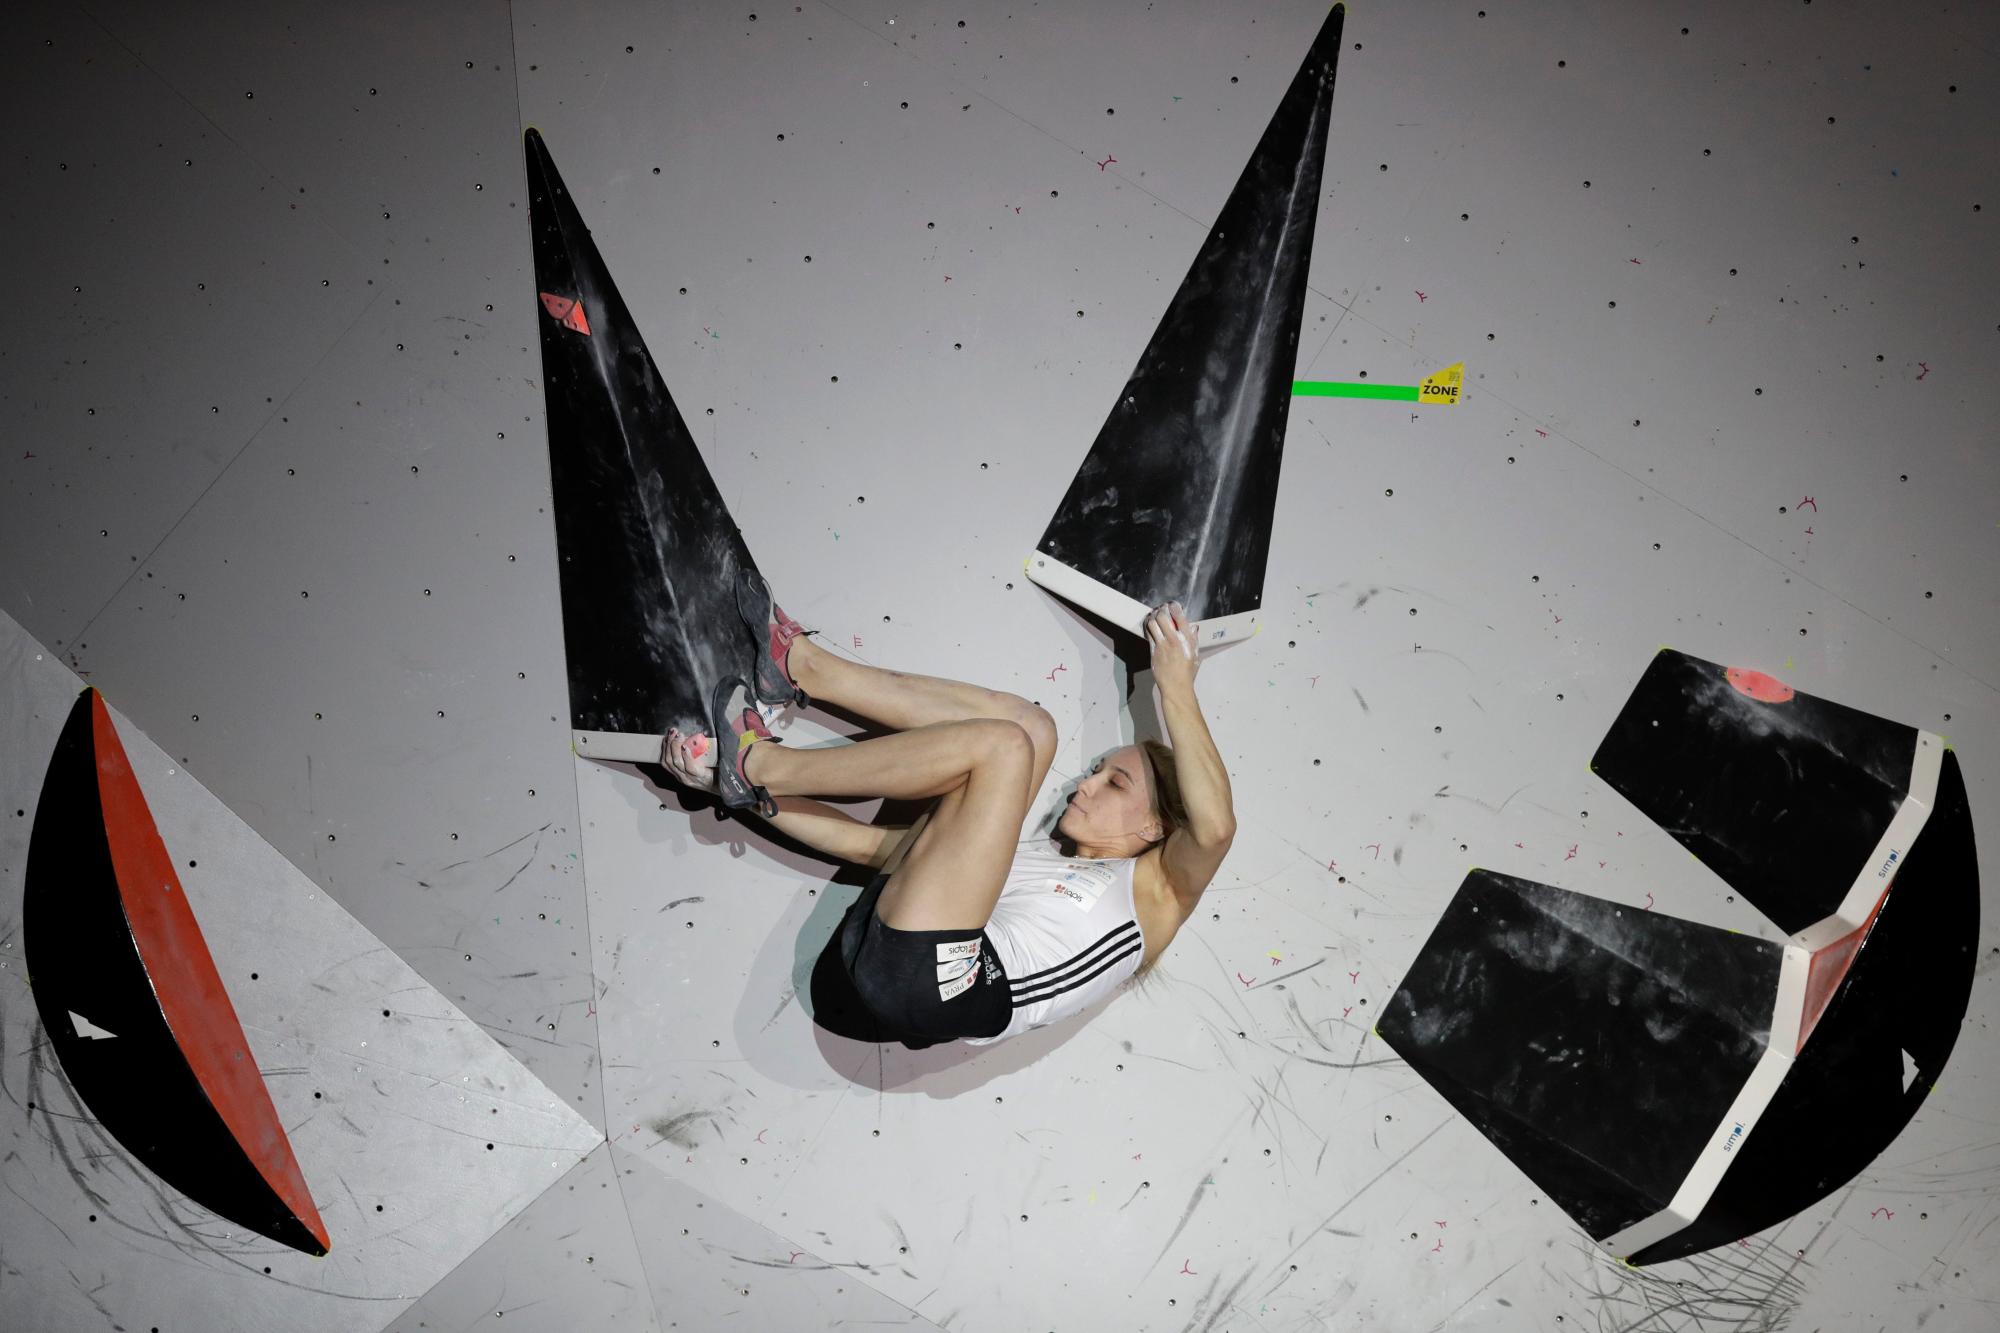 Janja Garnbret de Eslovenia compite durante la final femenina combinada de boulder en el Campeonato Mundial de la Federación Internacional de Escalada Deportiva el martes 20 de agosto de 2019 en Tokio. 